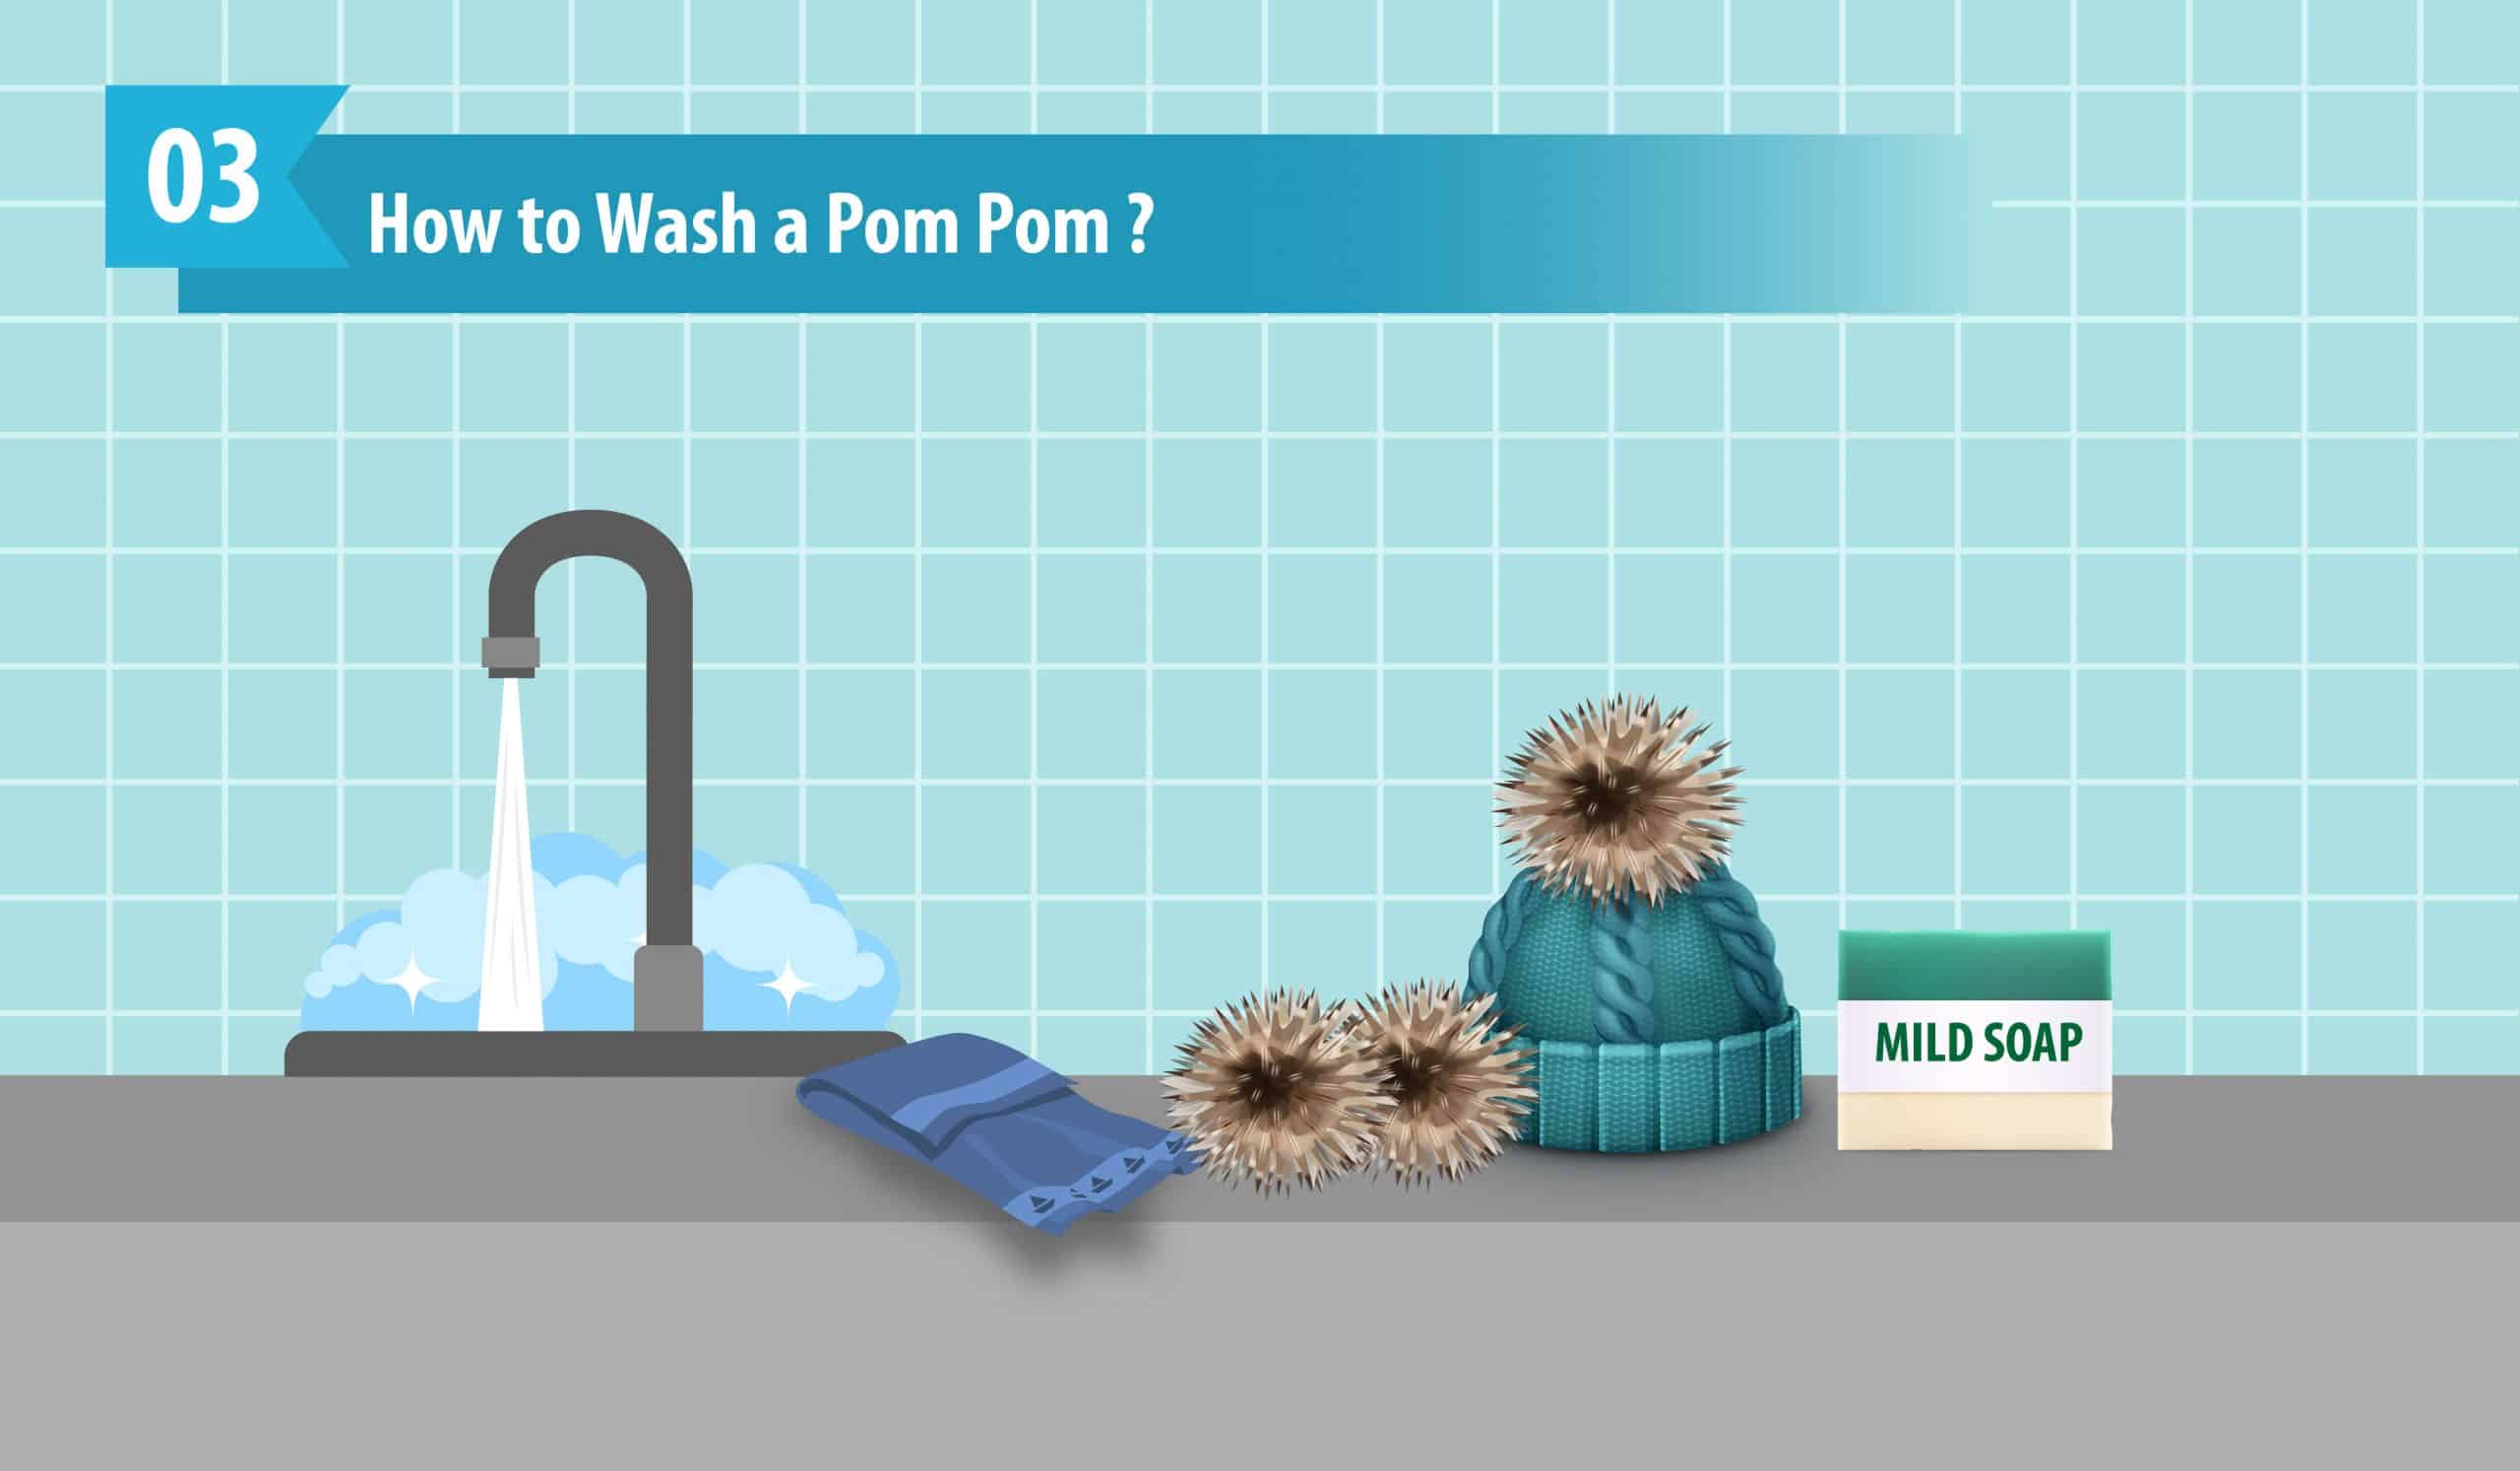 How to Wash a Pom Pom